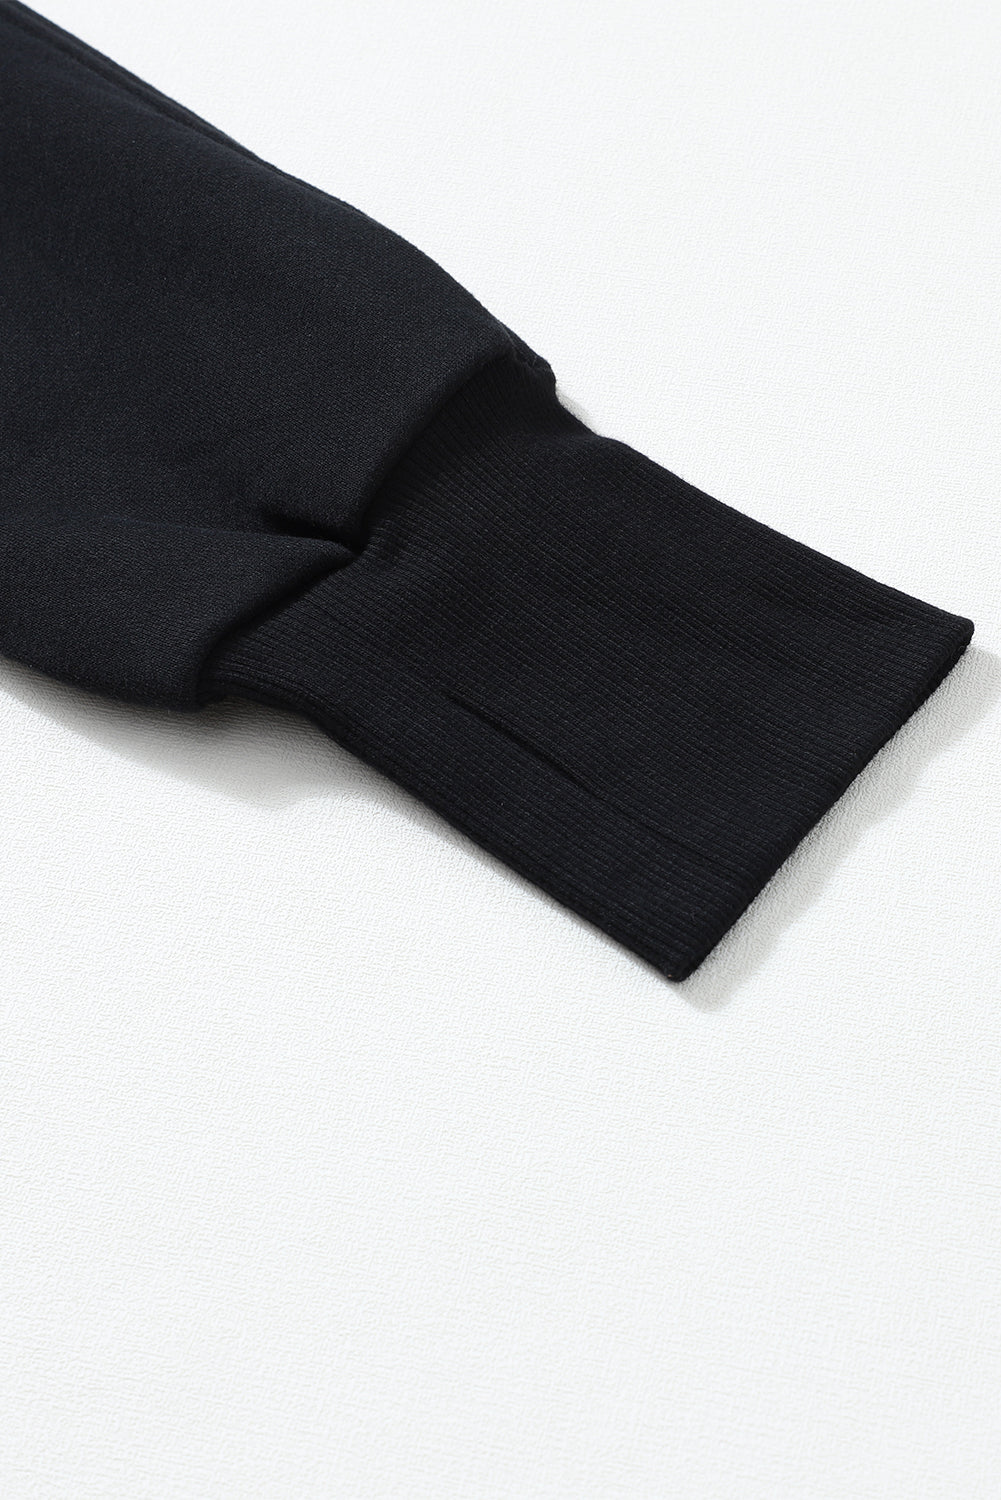 Schwarzes Sweatshirt mit Stehkragen und gerippten Daumenlöchern und Reißverschluss